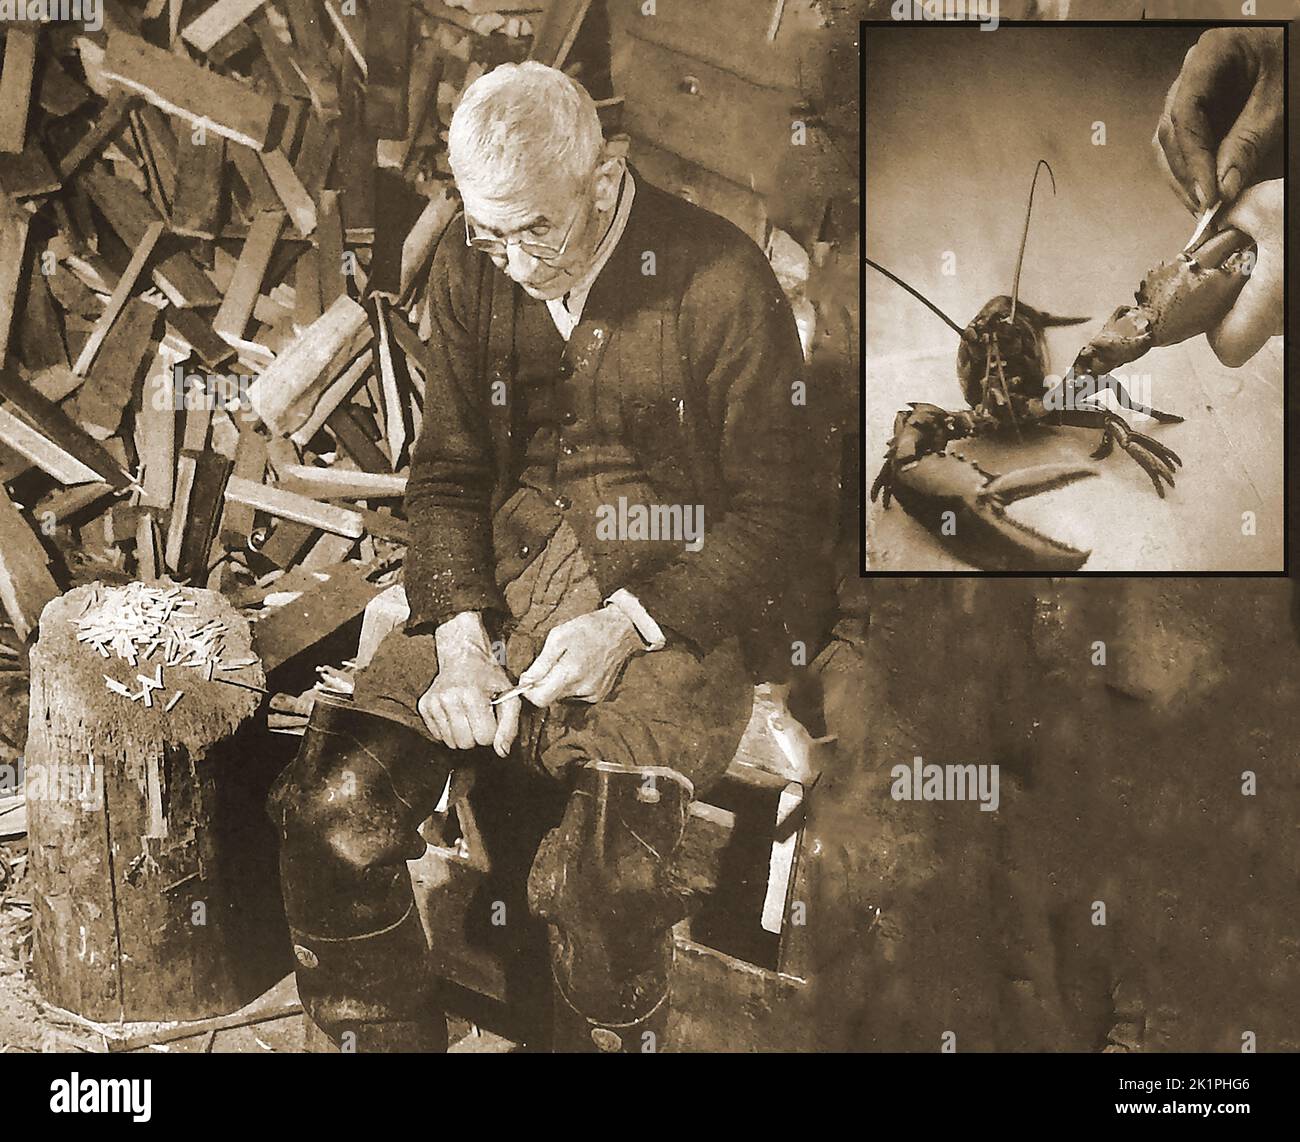 Un ancien pêcheur américain des années 1940 sculptant des langoustines à la main. Les chevilles traditionnelles sont destinées à empêcher les homards d'écraser les doigts de ceux qui les manipulent en empêchant le grand joint de griffe de se fermer, comme illustré dans l'image en incrustation. Banque D'Images